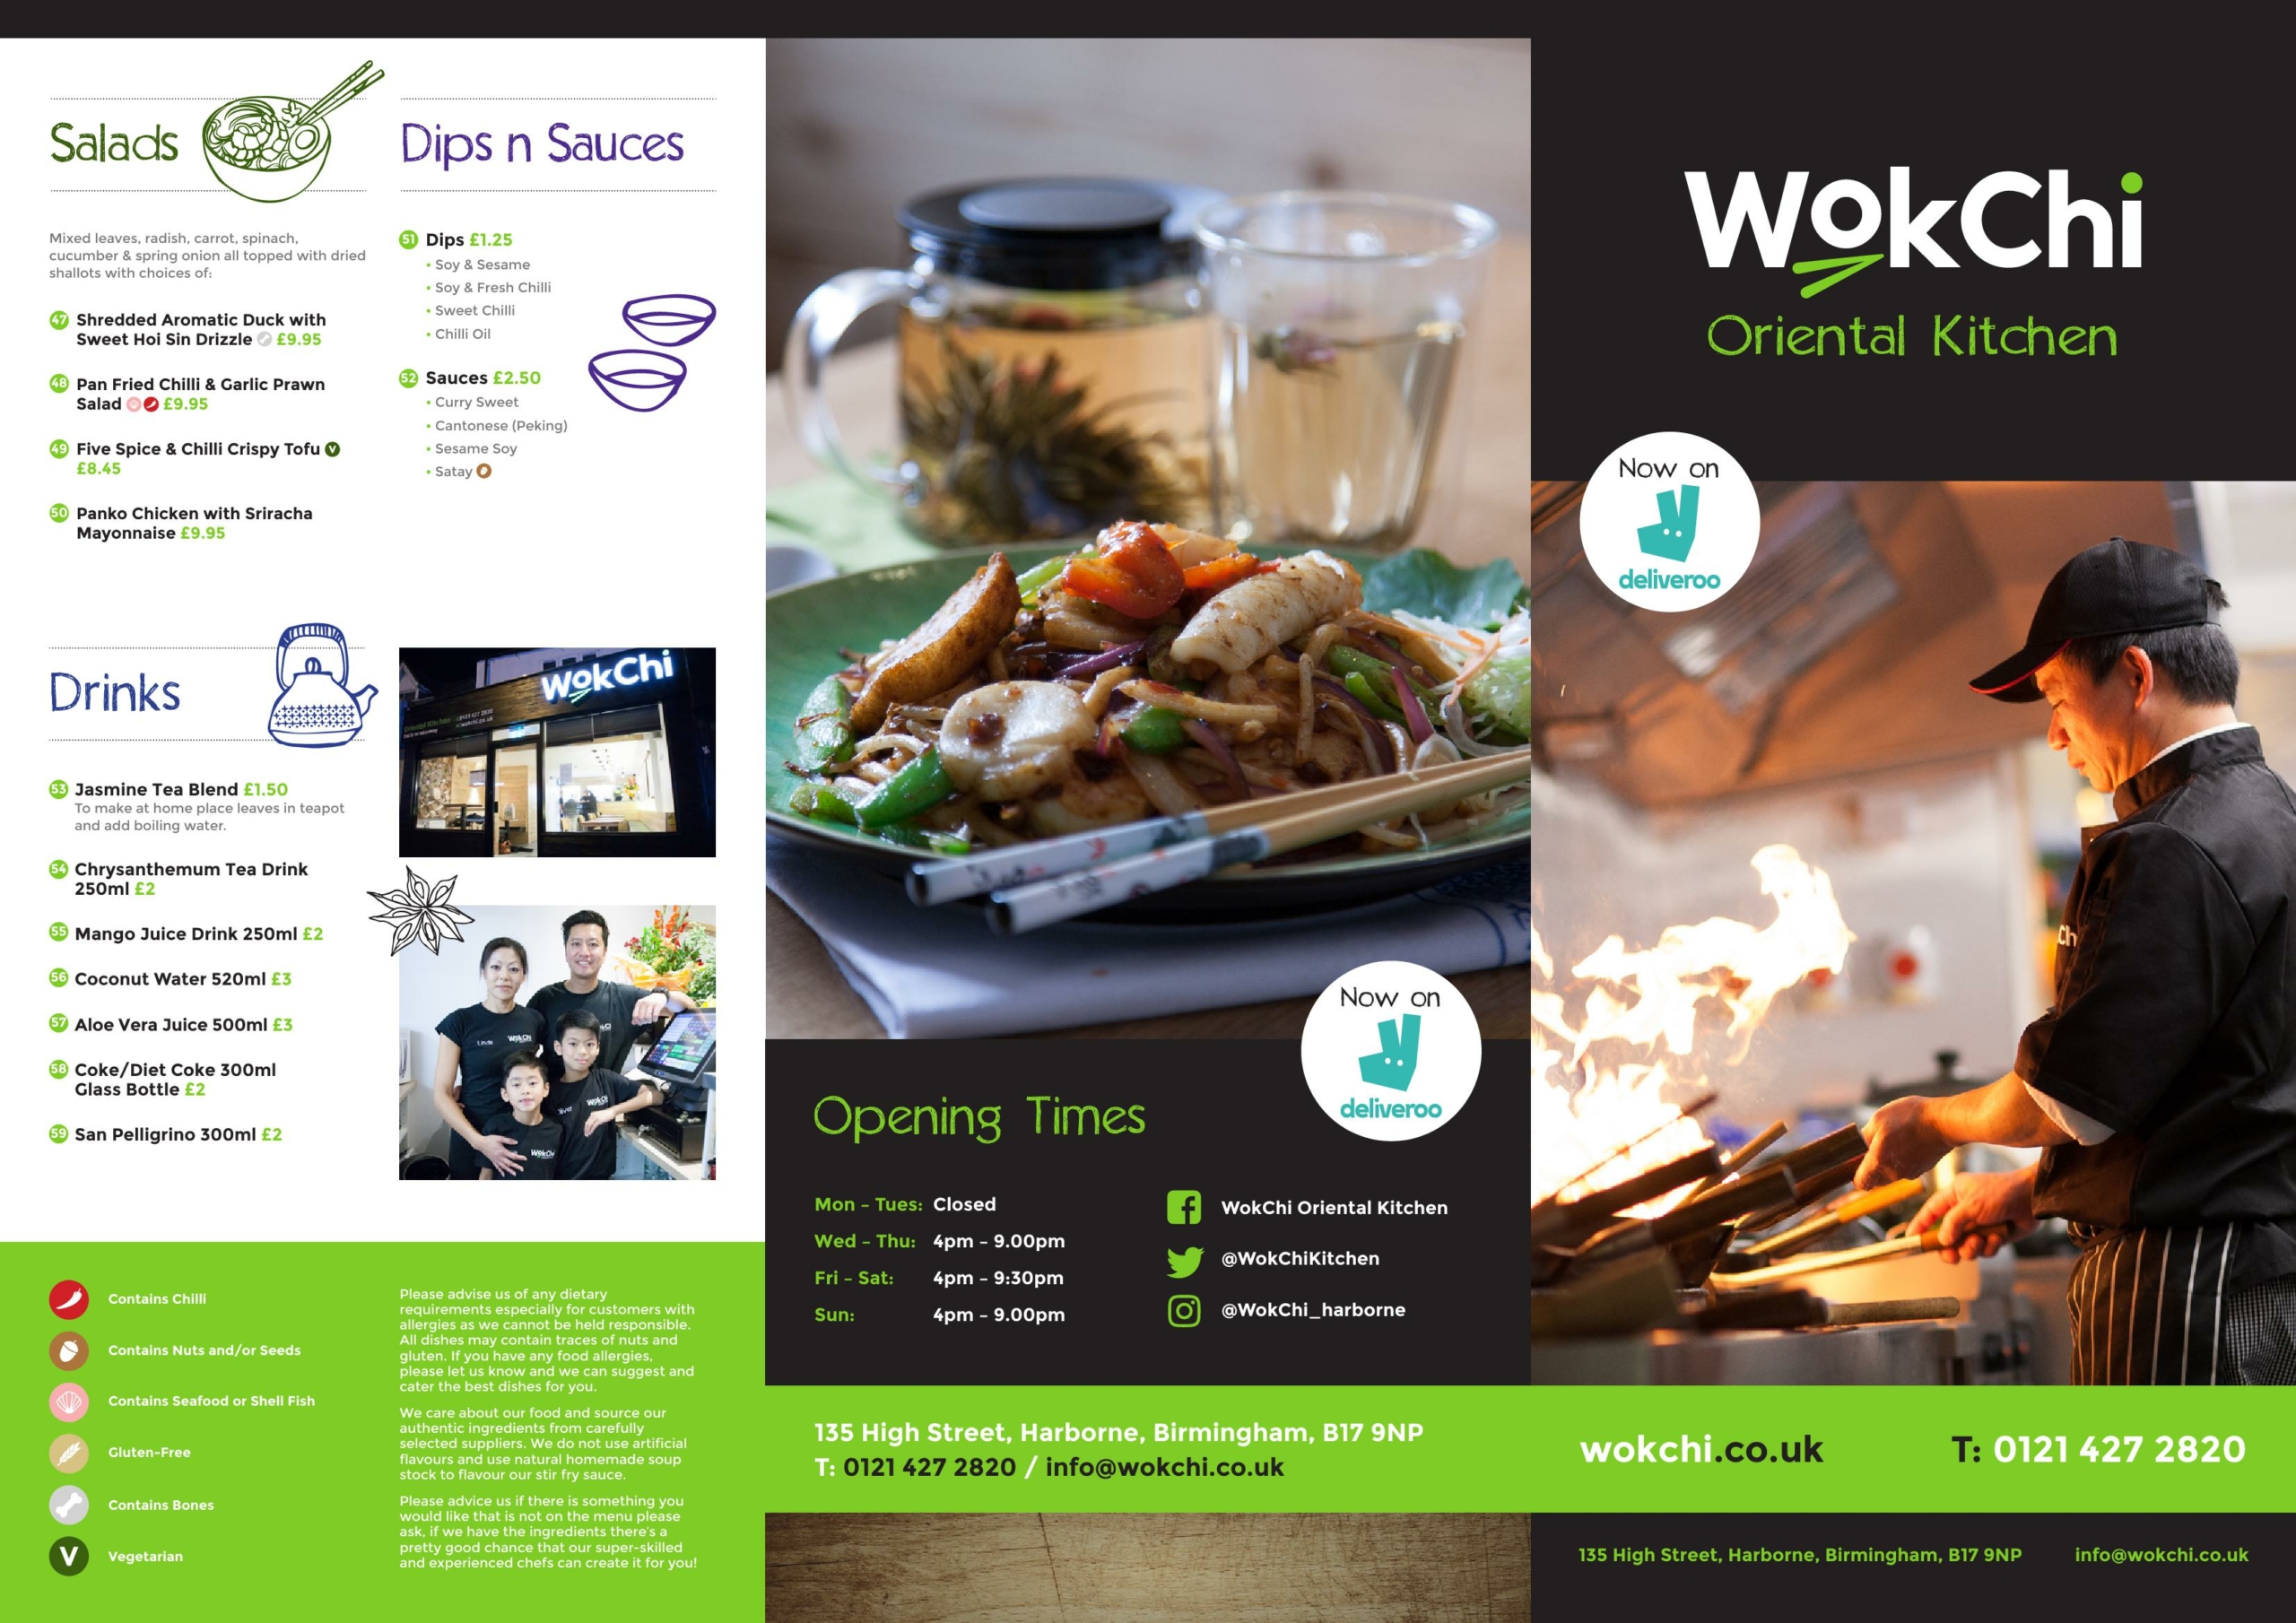 Wok Chi Oriental Kitchen - main menu